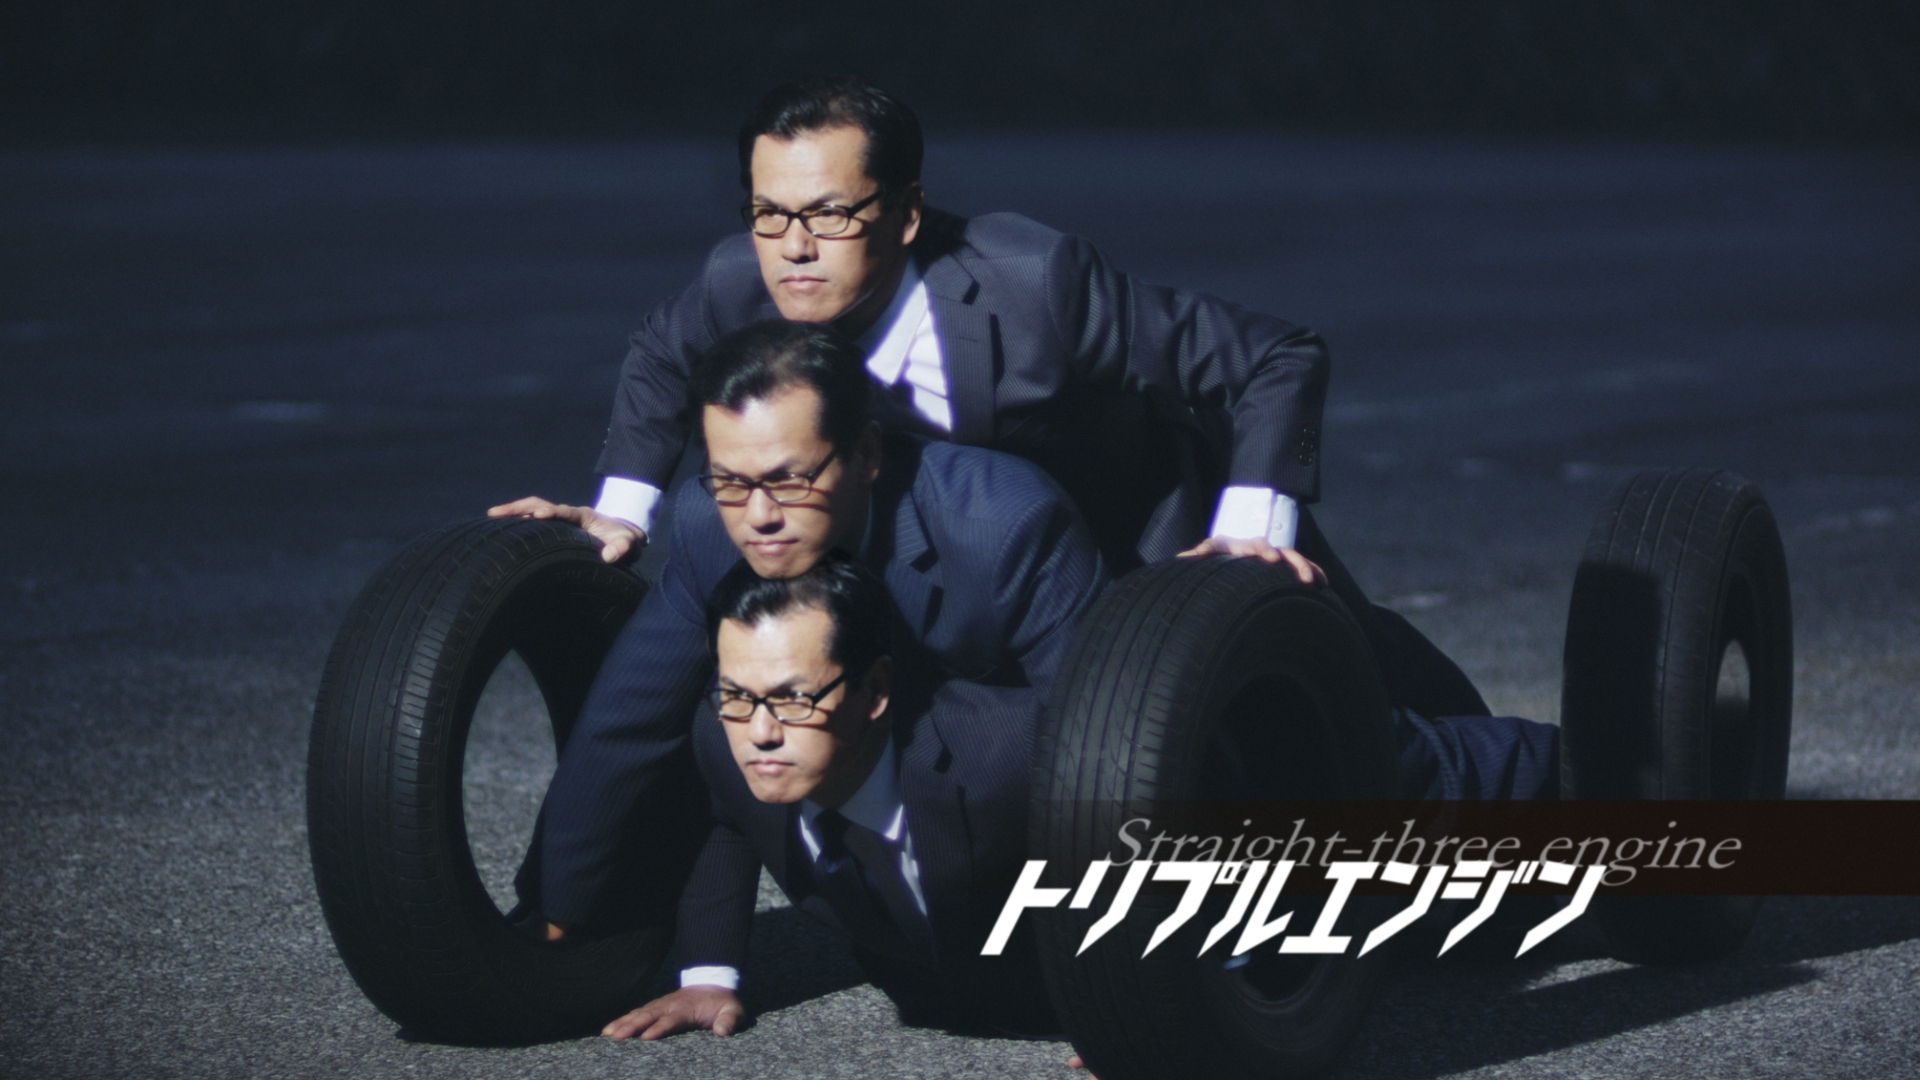 ミスターSASUKE、両手足にタイヤを装着し車の擬人化に挑戦